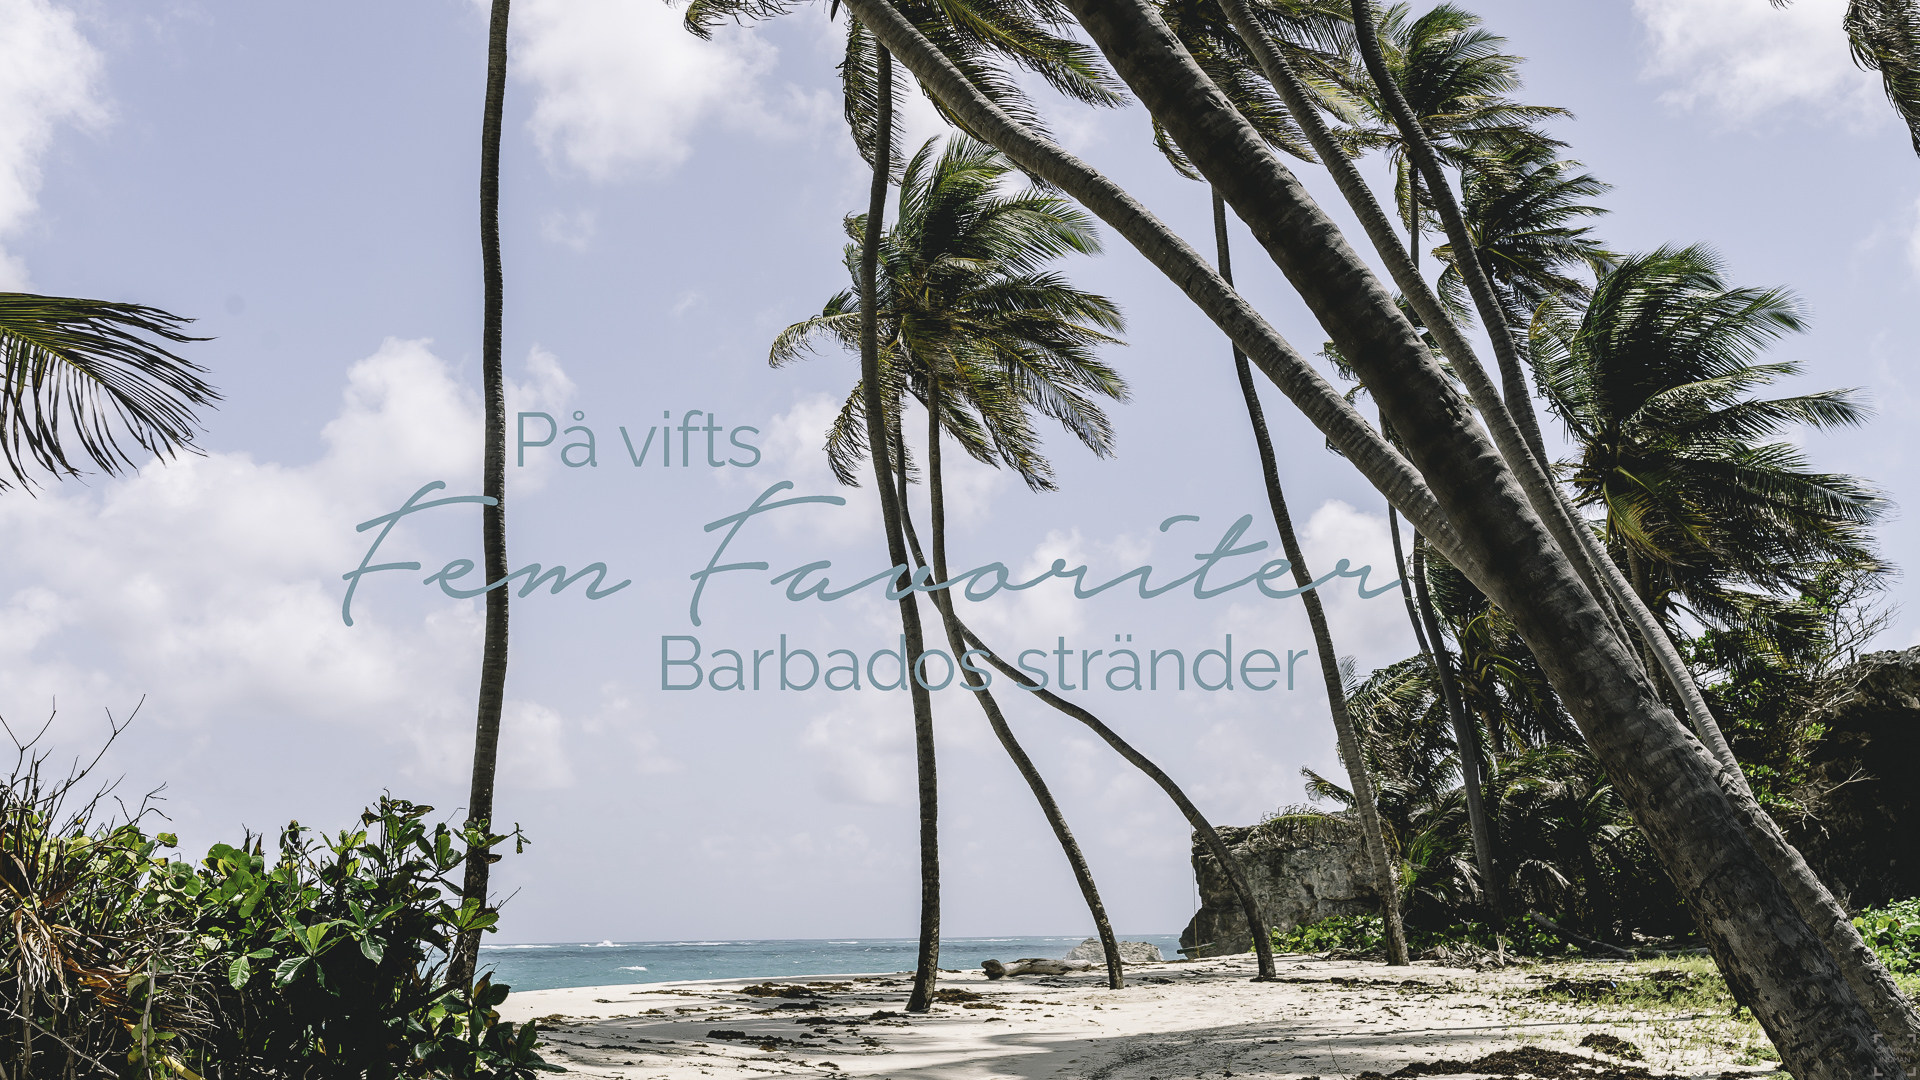 Barbados stränder, bästa strand barbados